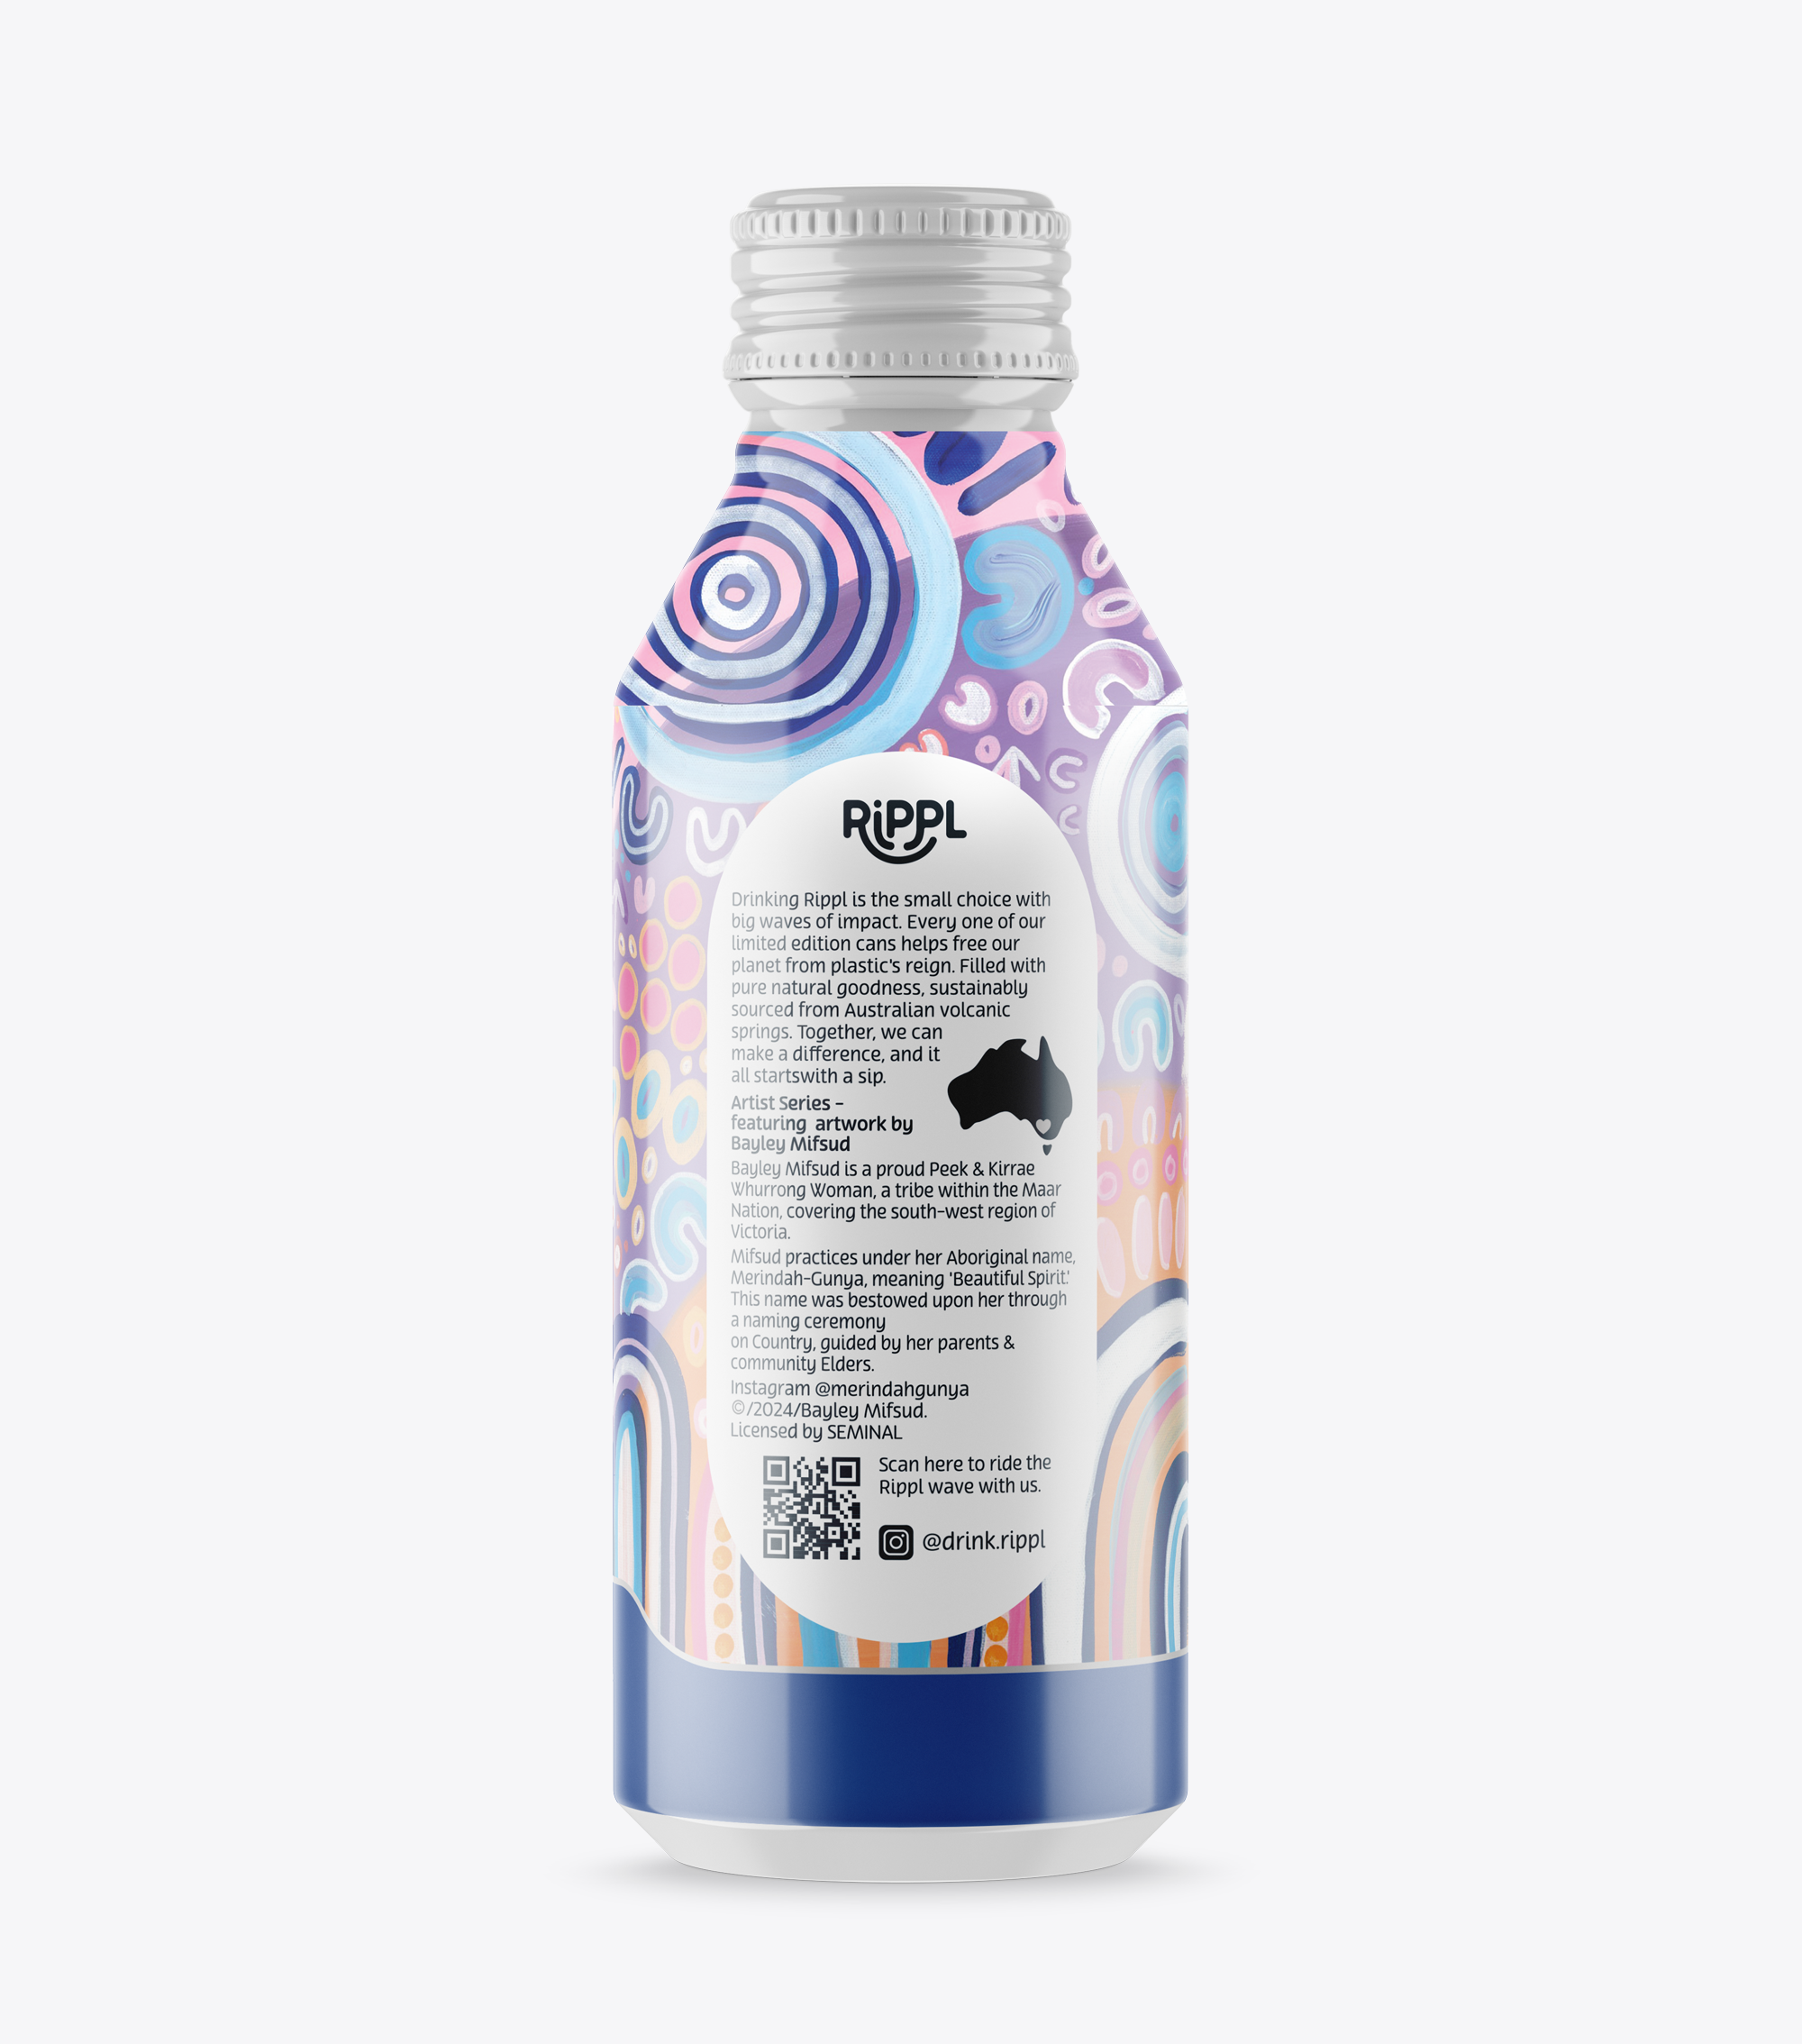 Merindah-Gunya Ngootyoong 'Joy' Reusable Bottled Water x24 Pack